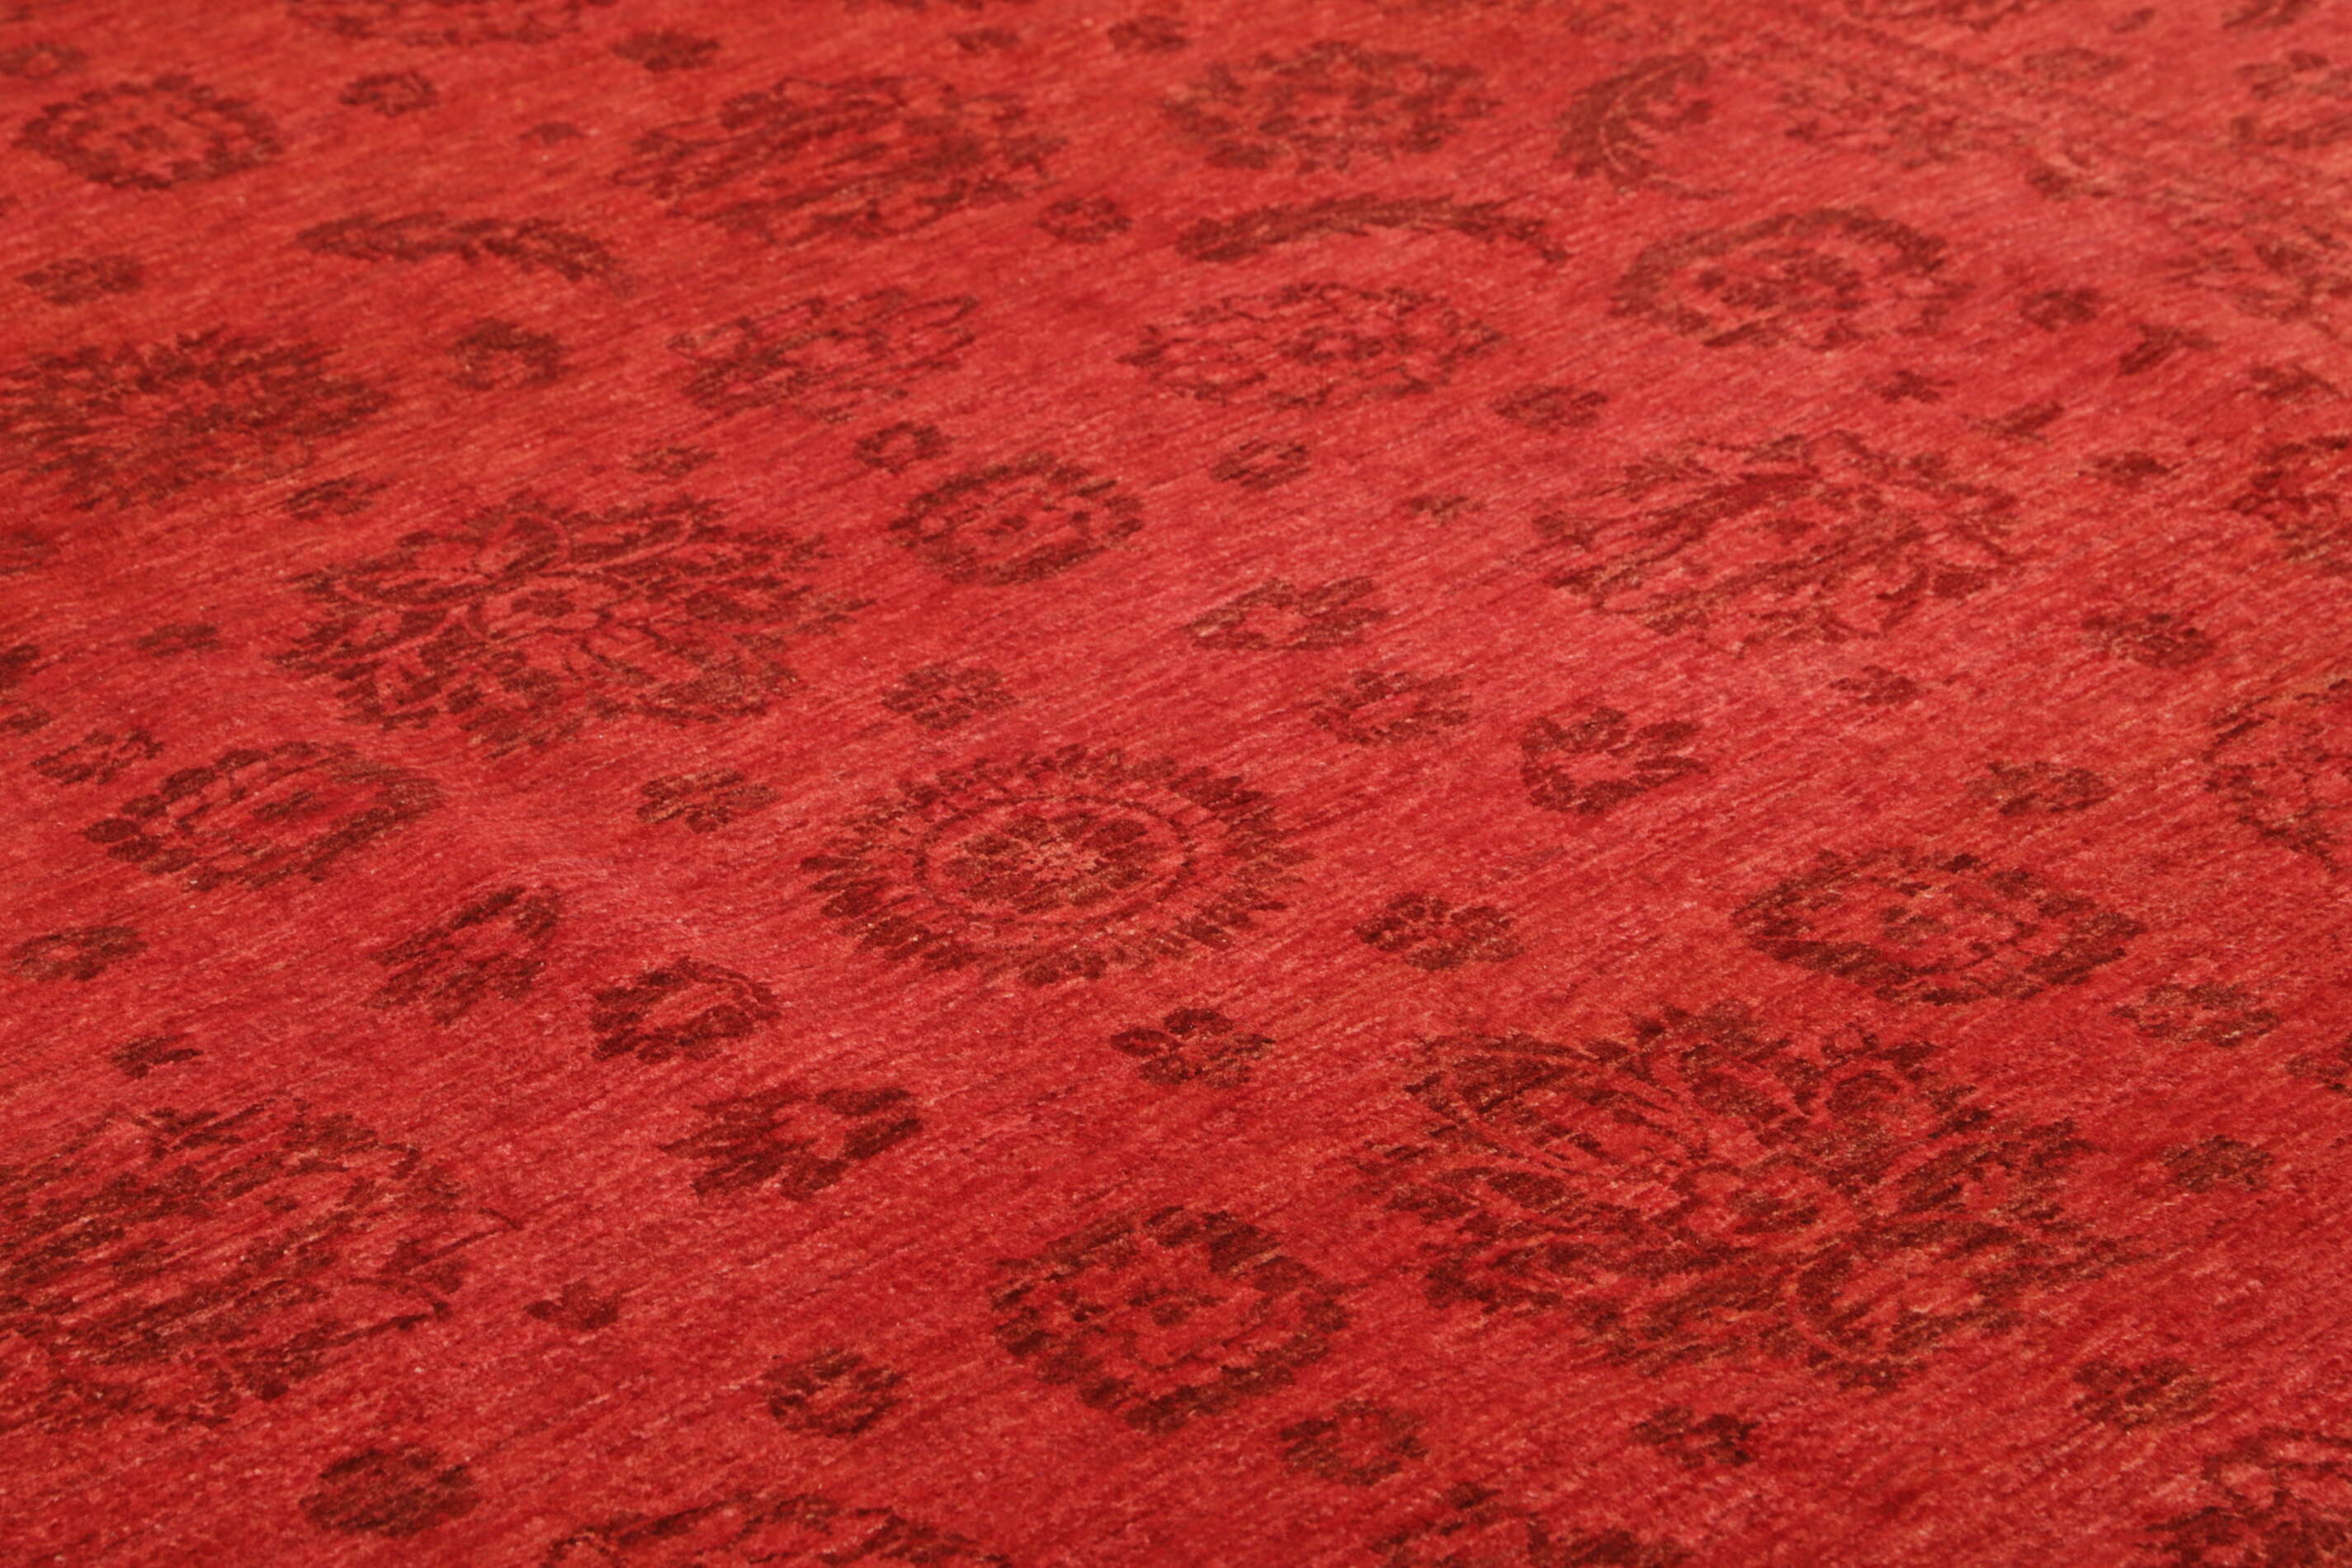 Teppich Ziegler 244x306cm Orientteppich rot Handgeknüpft Wolle